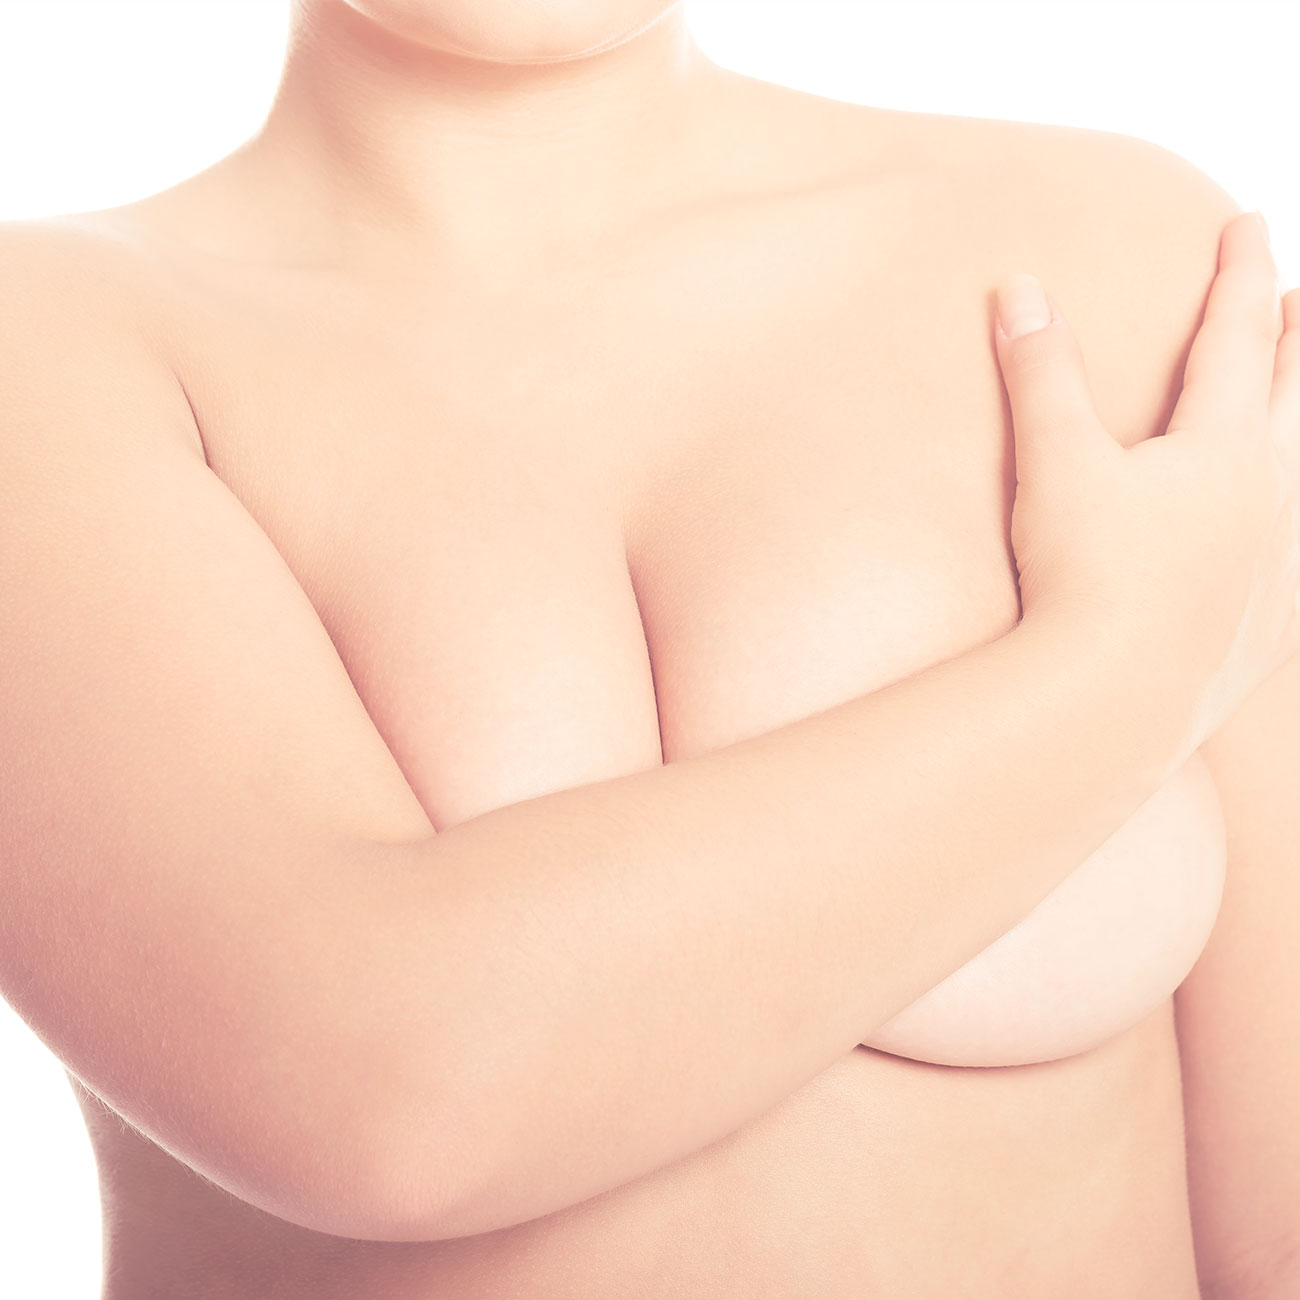 Reducción de mamas o de pecho en madrid